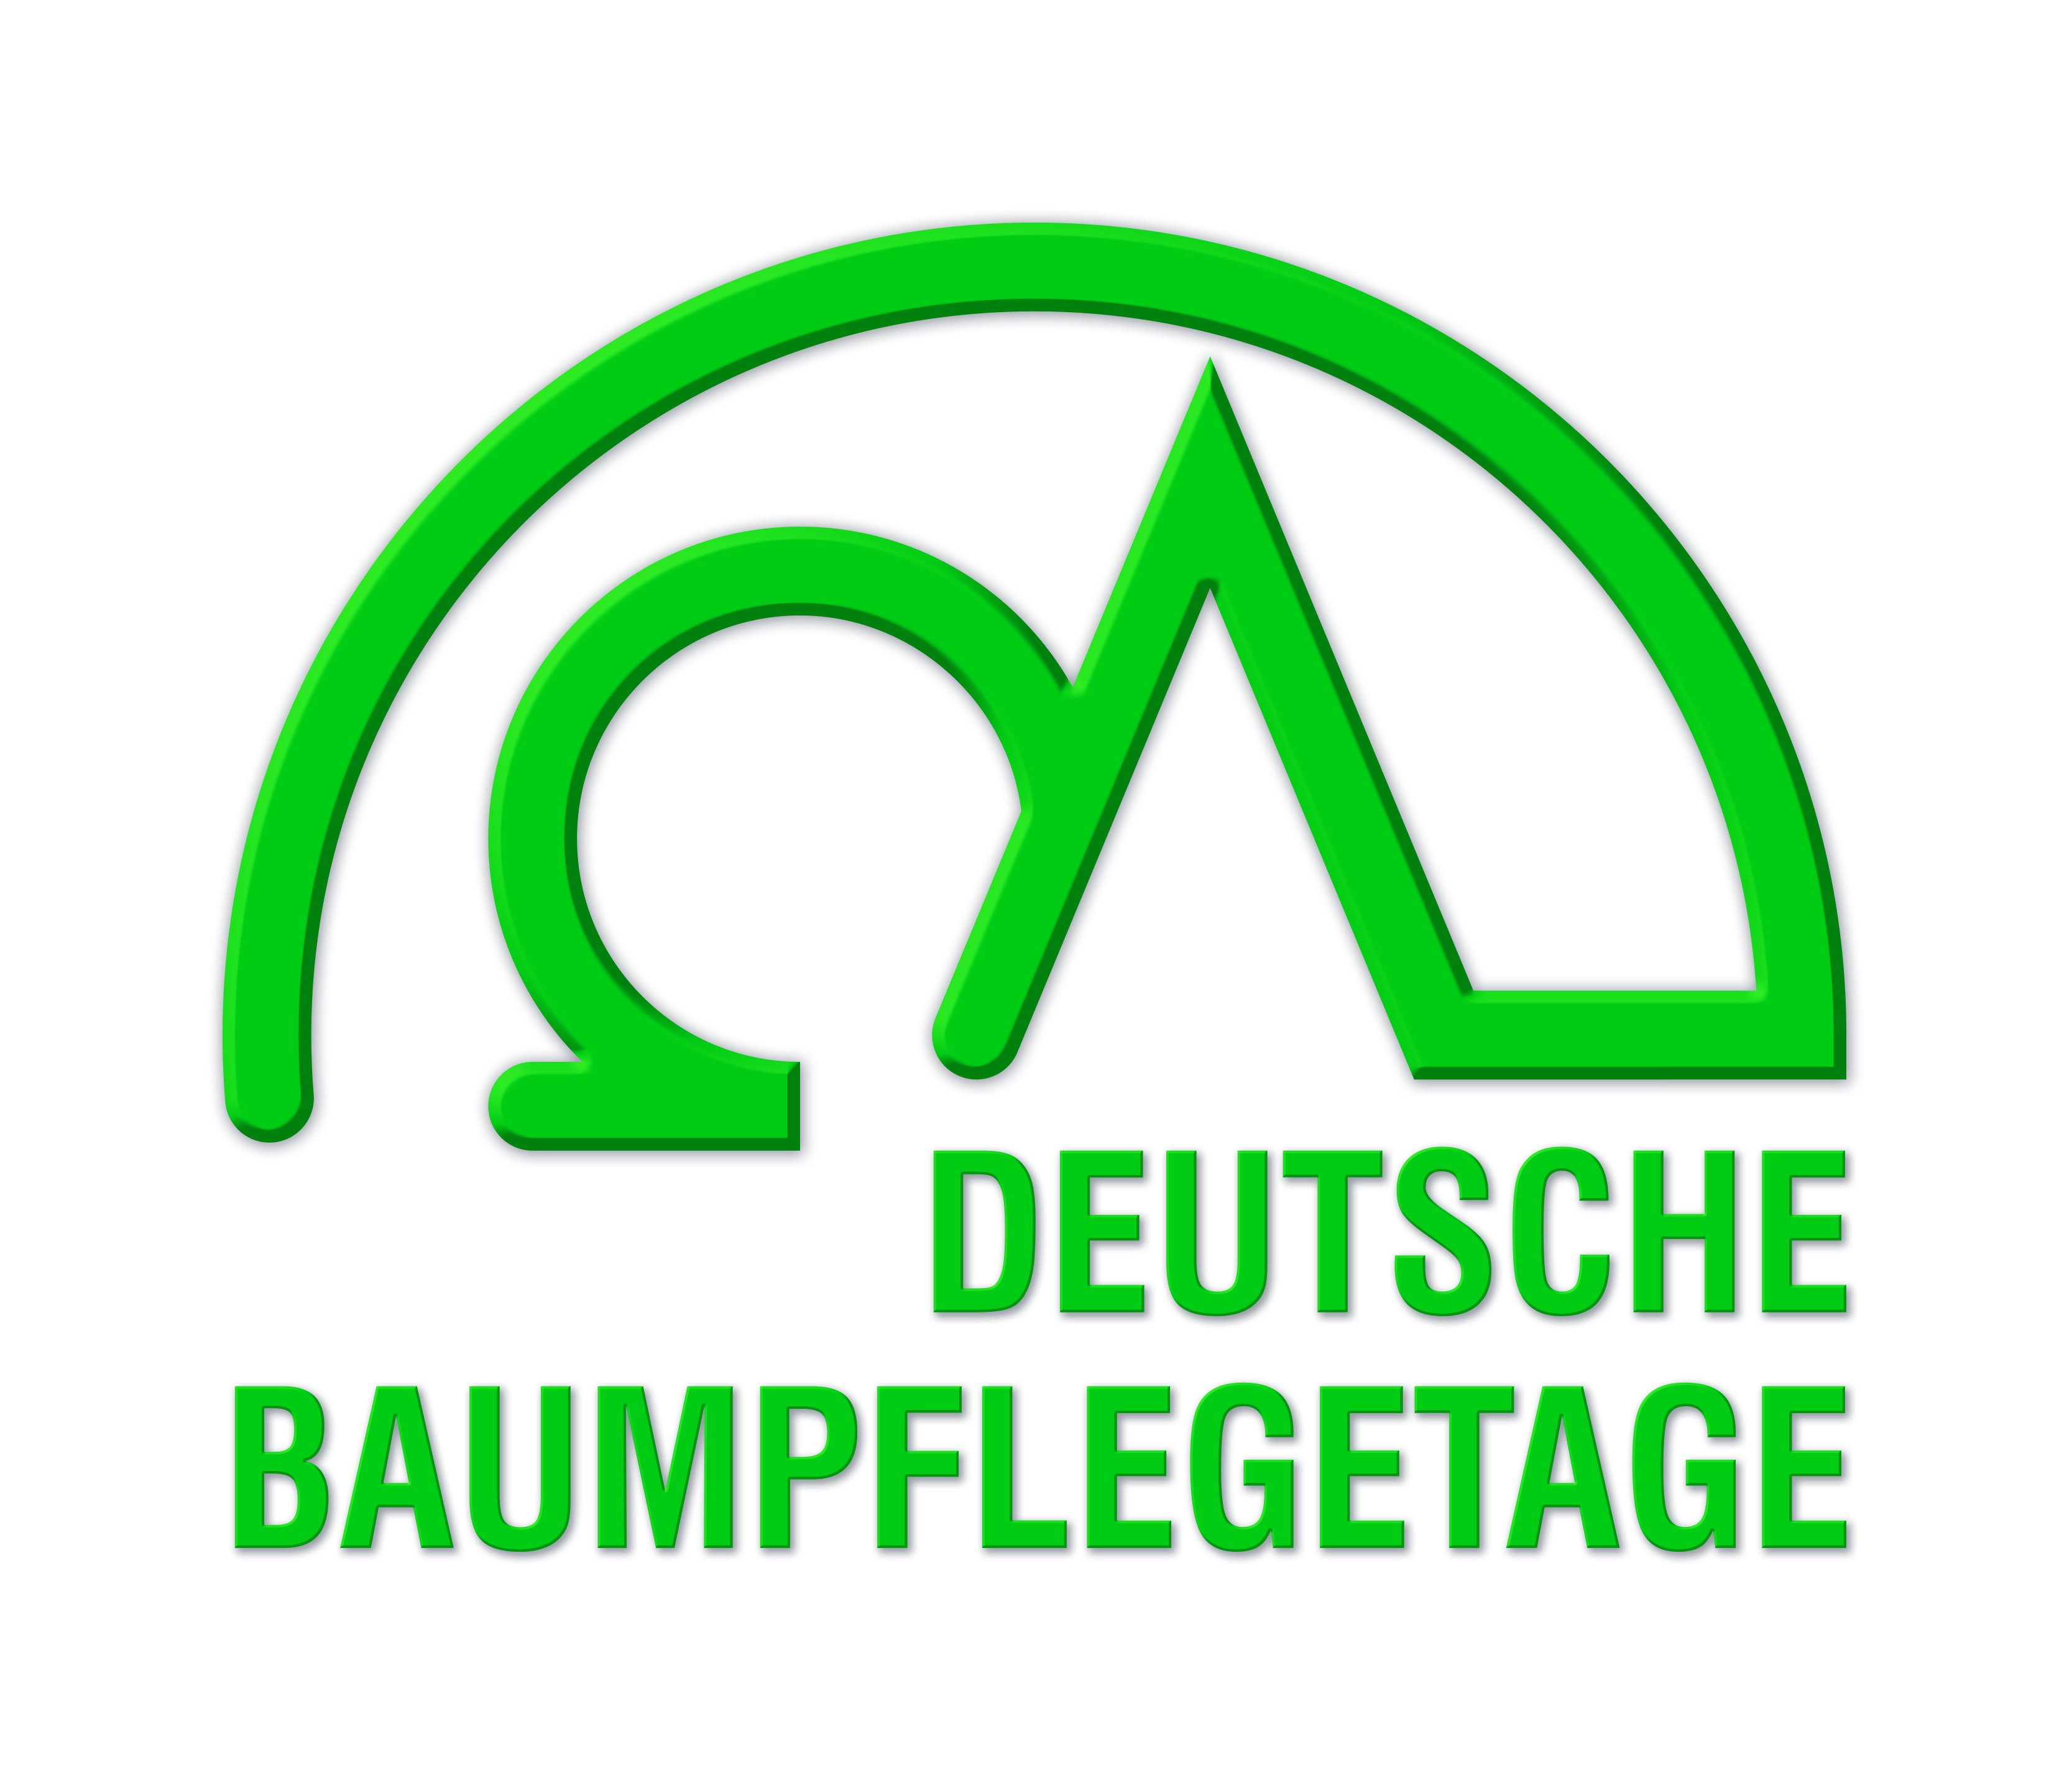 Venez nous visiter aux Deutsche Baumpflegetage du 24 au 26 d’avril 2018!